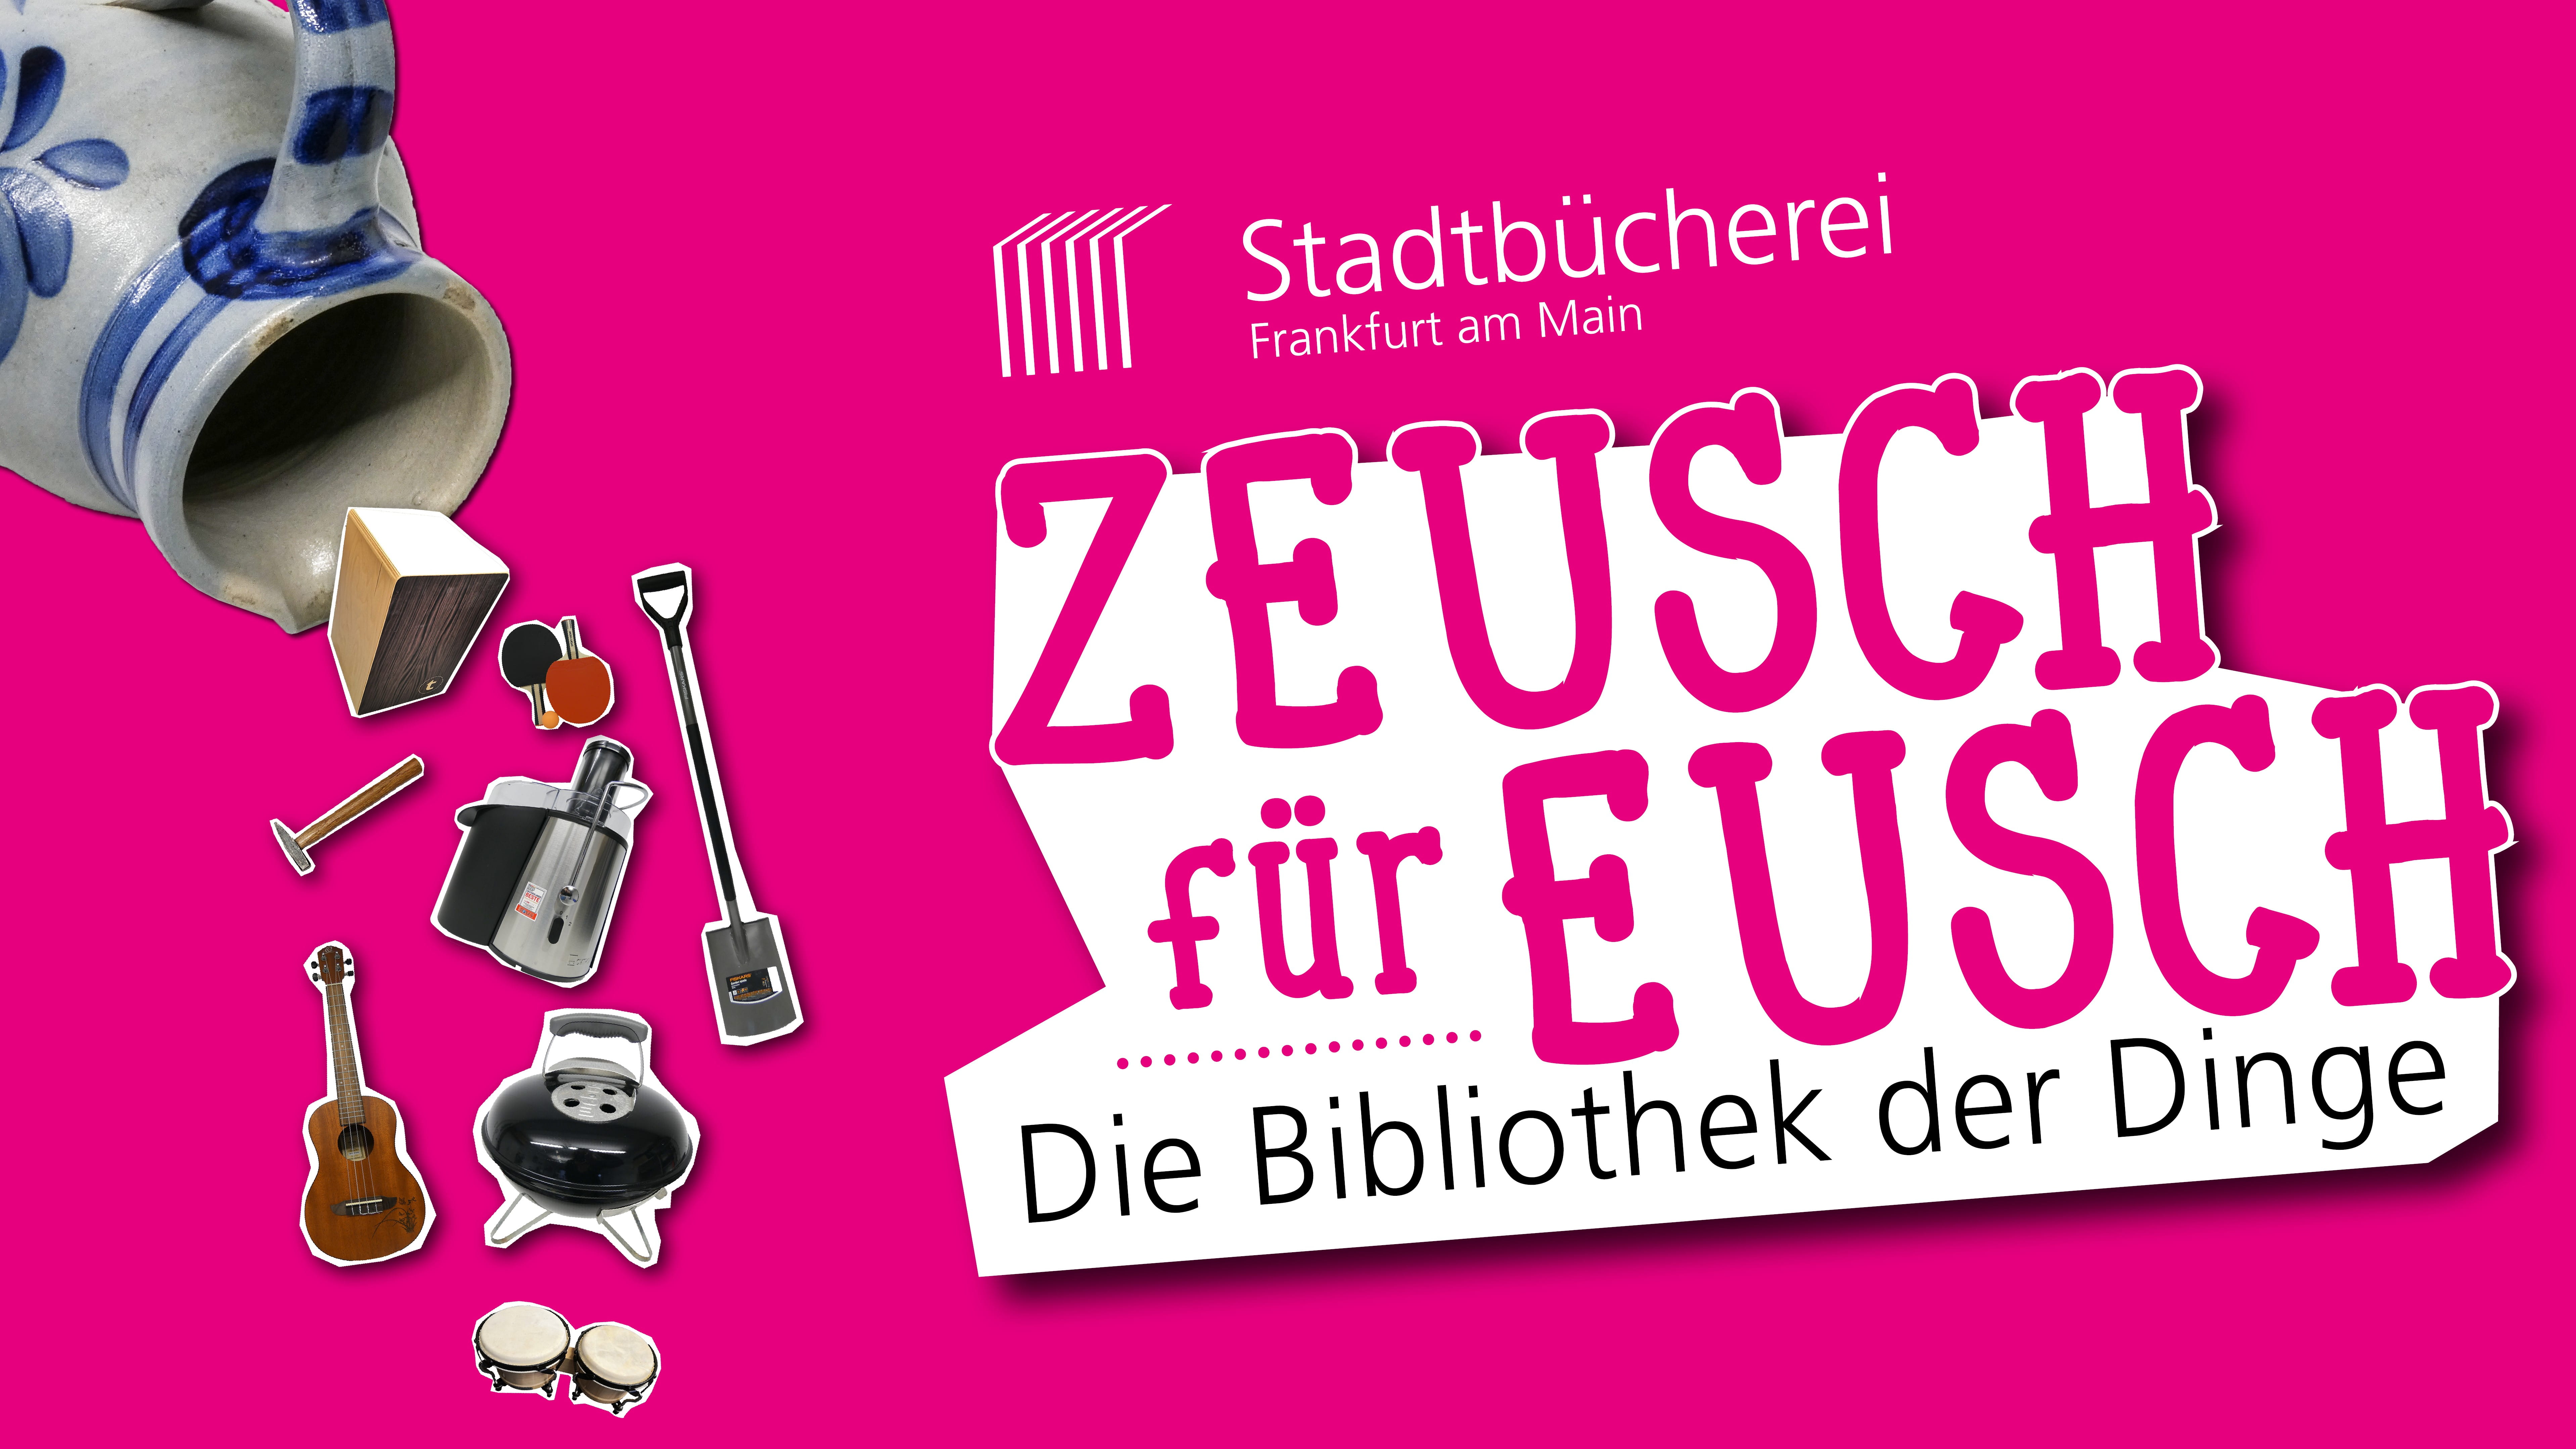 Zeusch für Eusch - Die Bibliothek der Dinge jetzt auch in Frankfurt! 